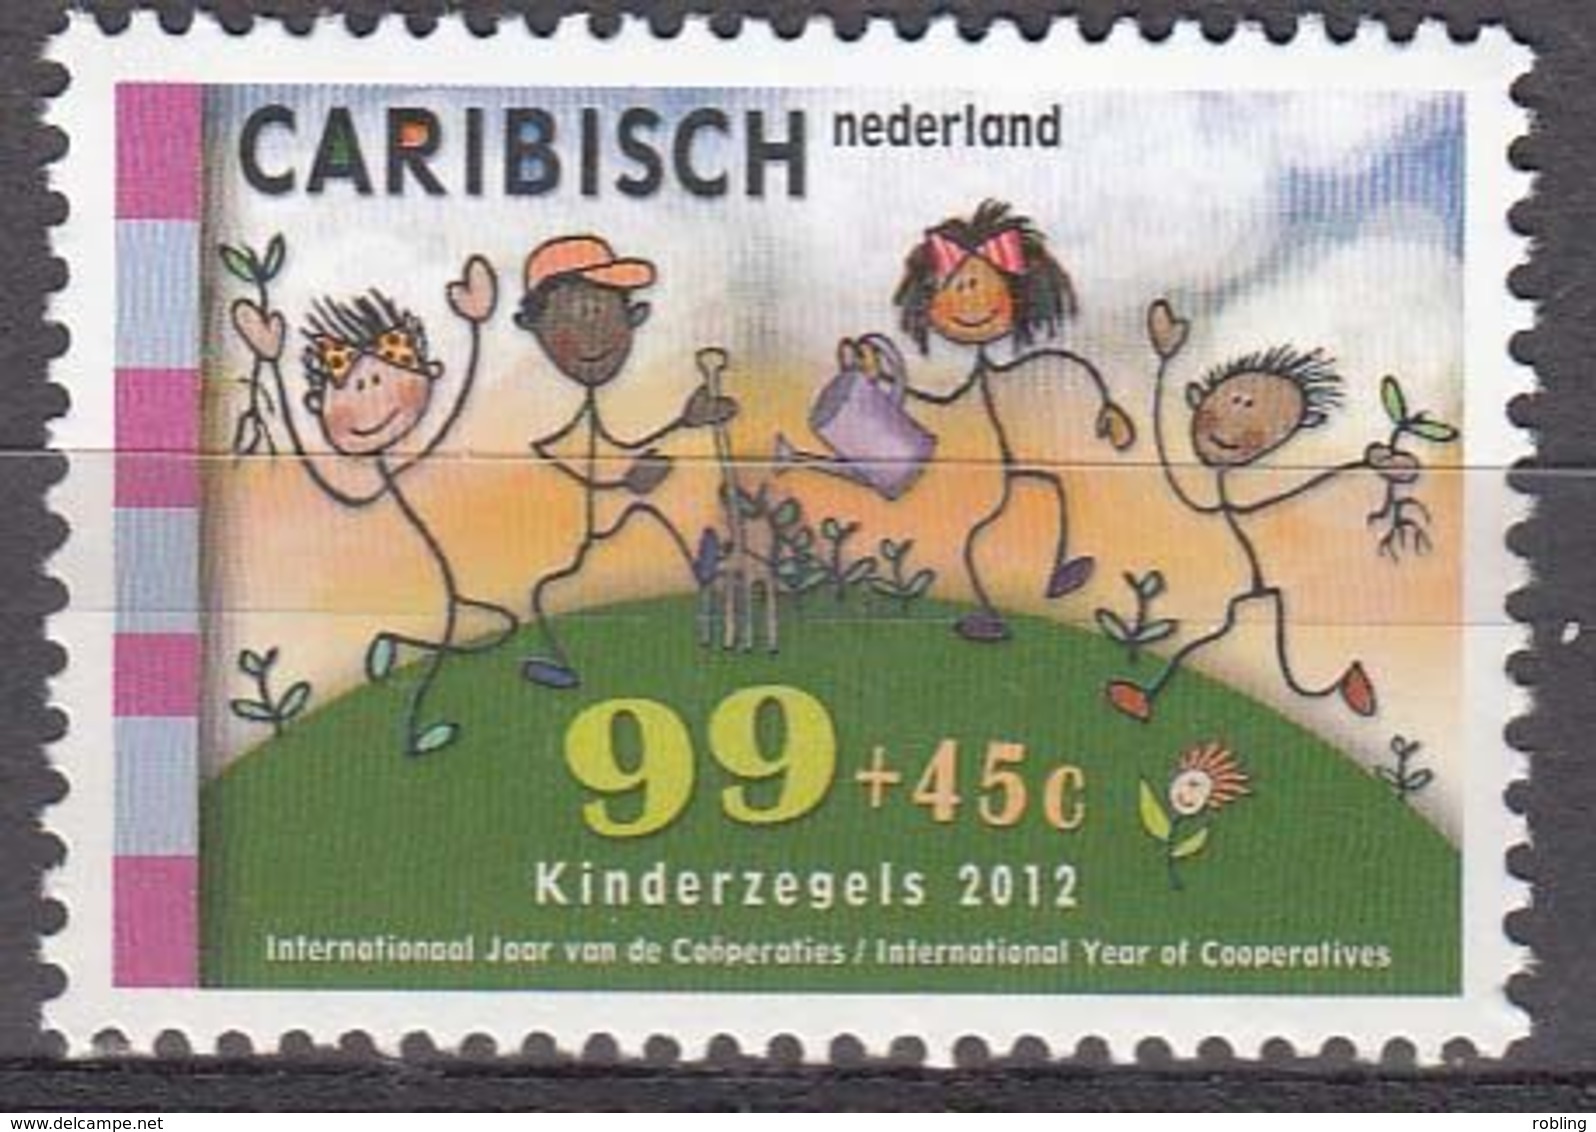 Antilles/Caribisch Netherlands 2013  Michel  38  MNH 27945 - West Indies